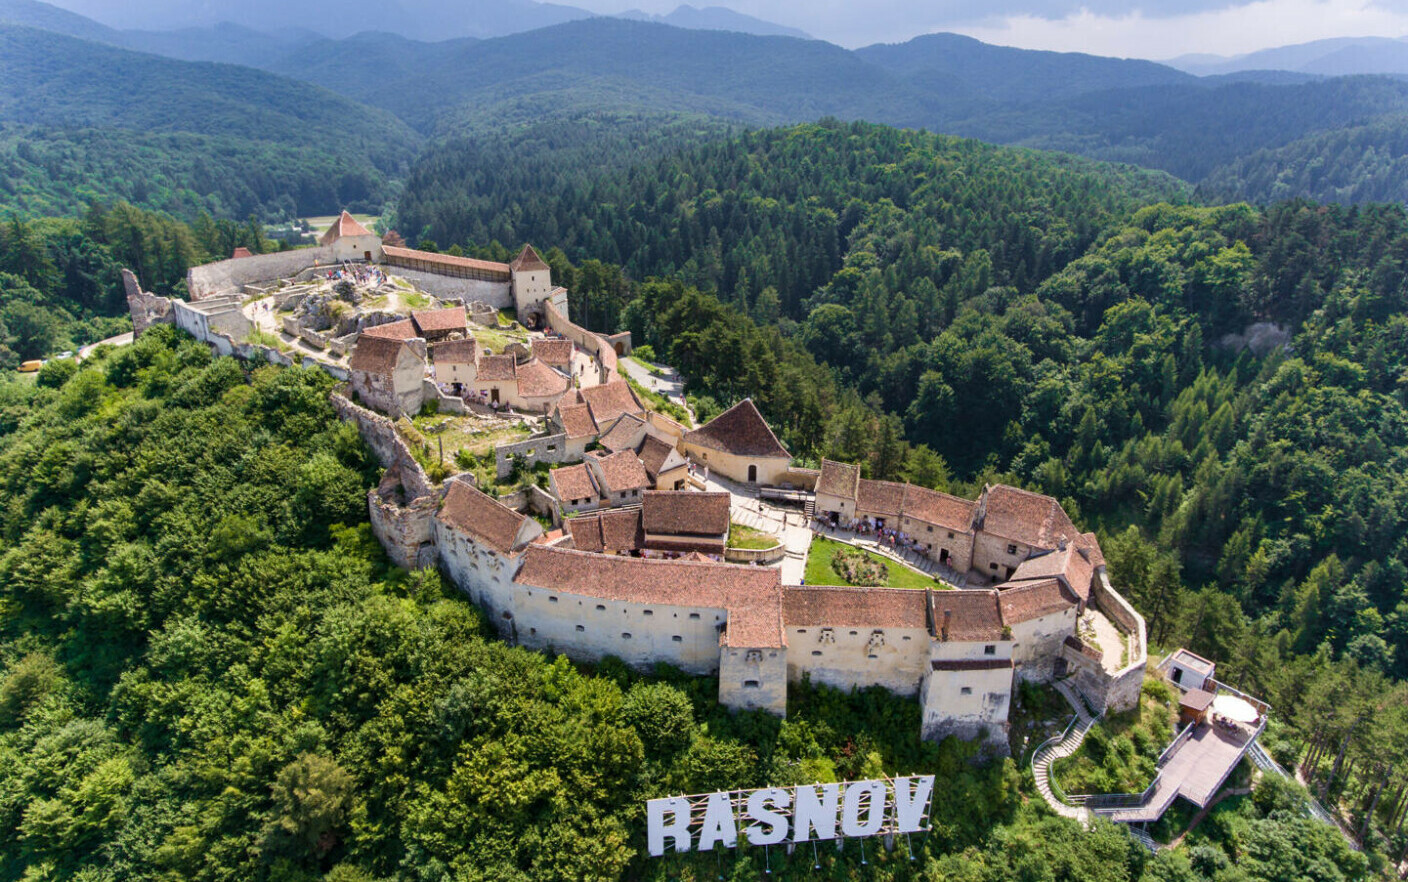 Cetatea Rasnov